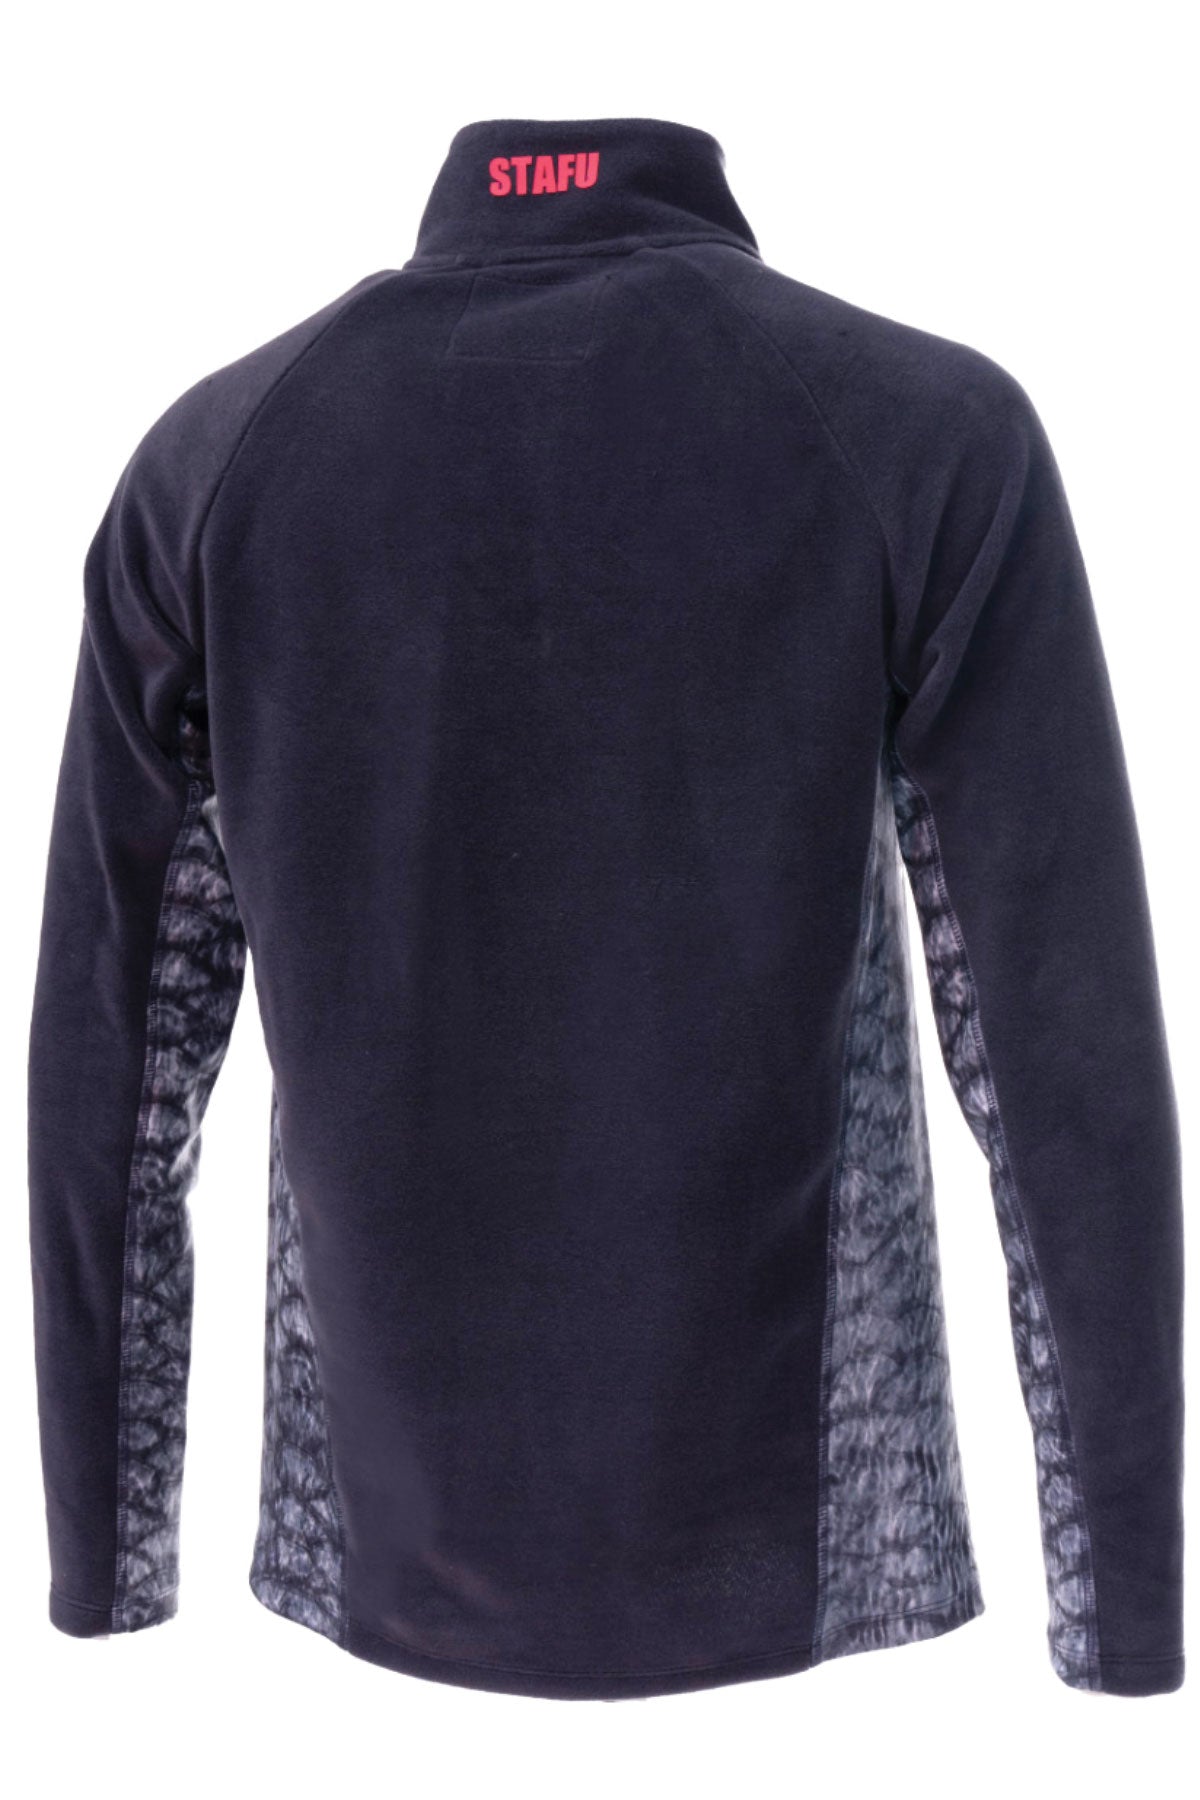 Raptor Half Zip Fleece Pullover - Grey - Stafu Pro Series